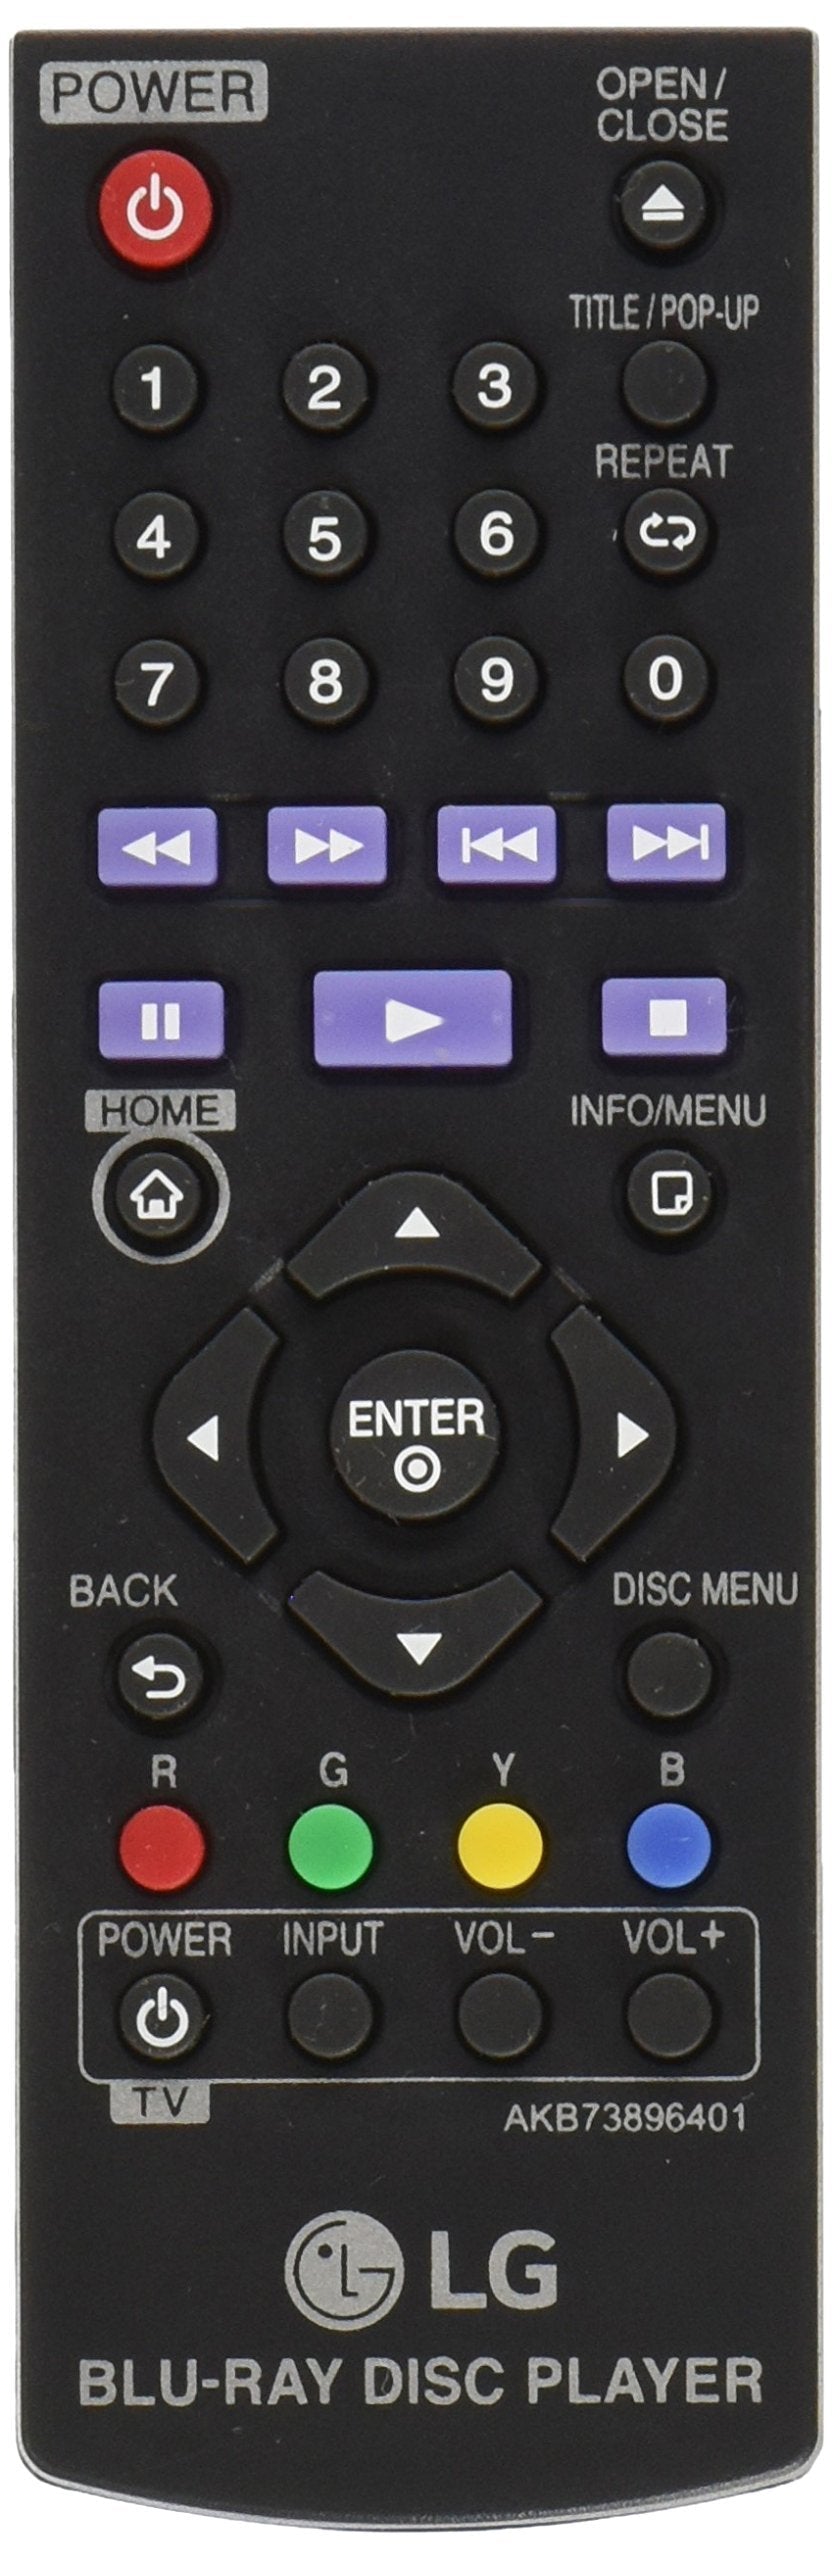 LG AKB73896401 Remote Control For BP200 AKB73896401 BD640 BP325W BP135W BP350 DVD Blu-Ray Disc Player - LeoForward Australia